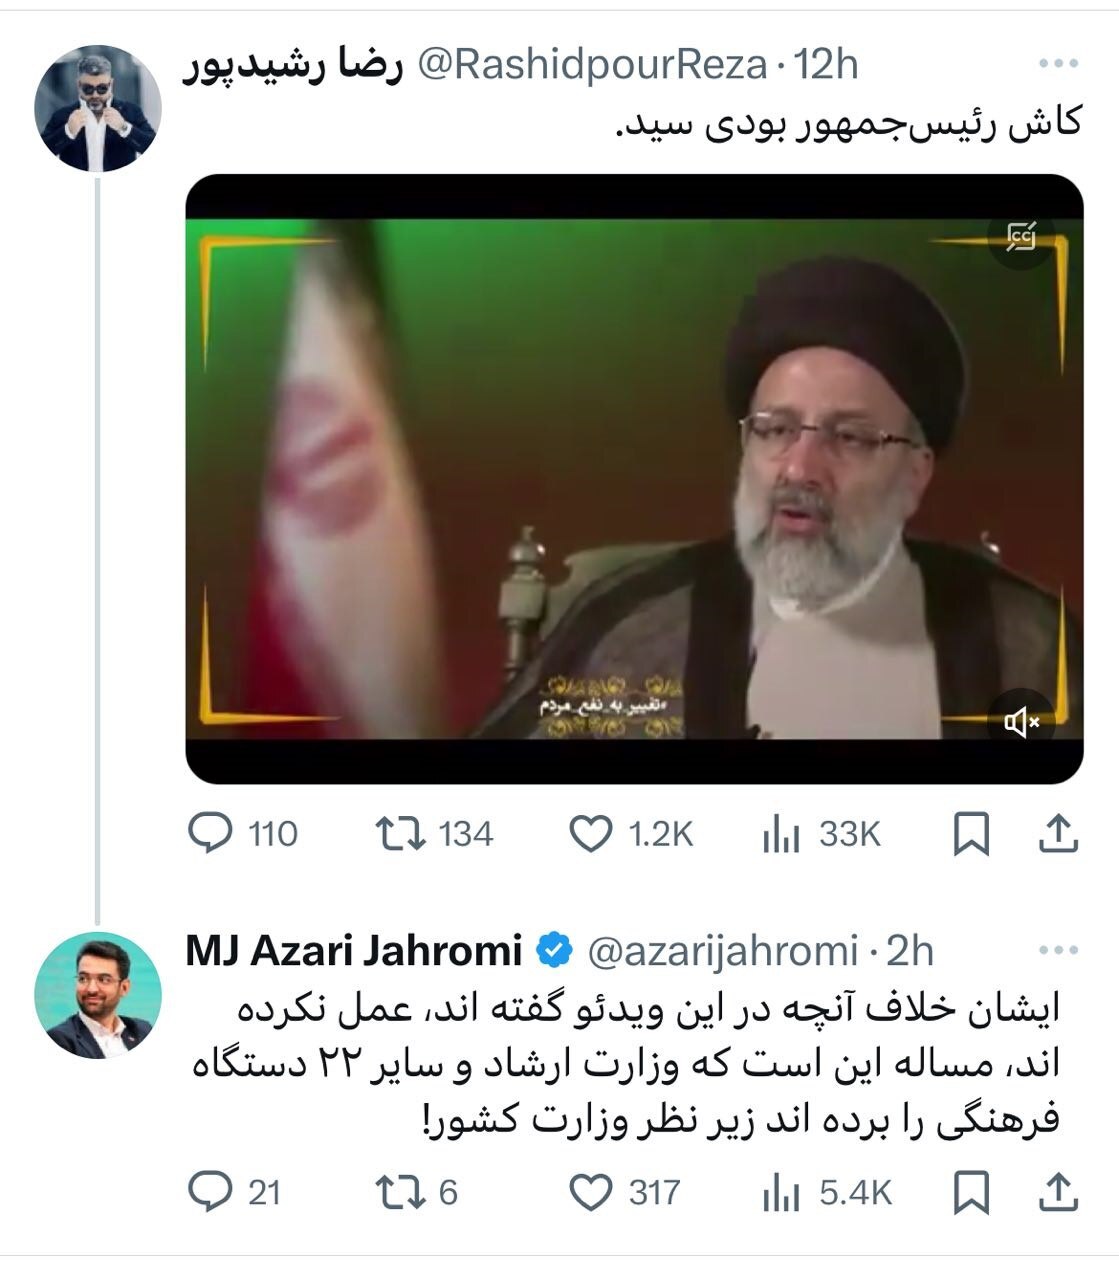 آذری جهرمی درمورد مسئله حجاب: رئیسی وزارت ارشاد و سایر دستگاه های فرهنگی را زیر نظر وزارت کشور برده